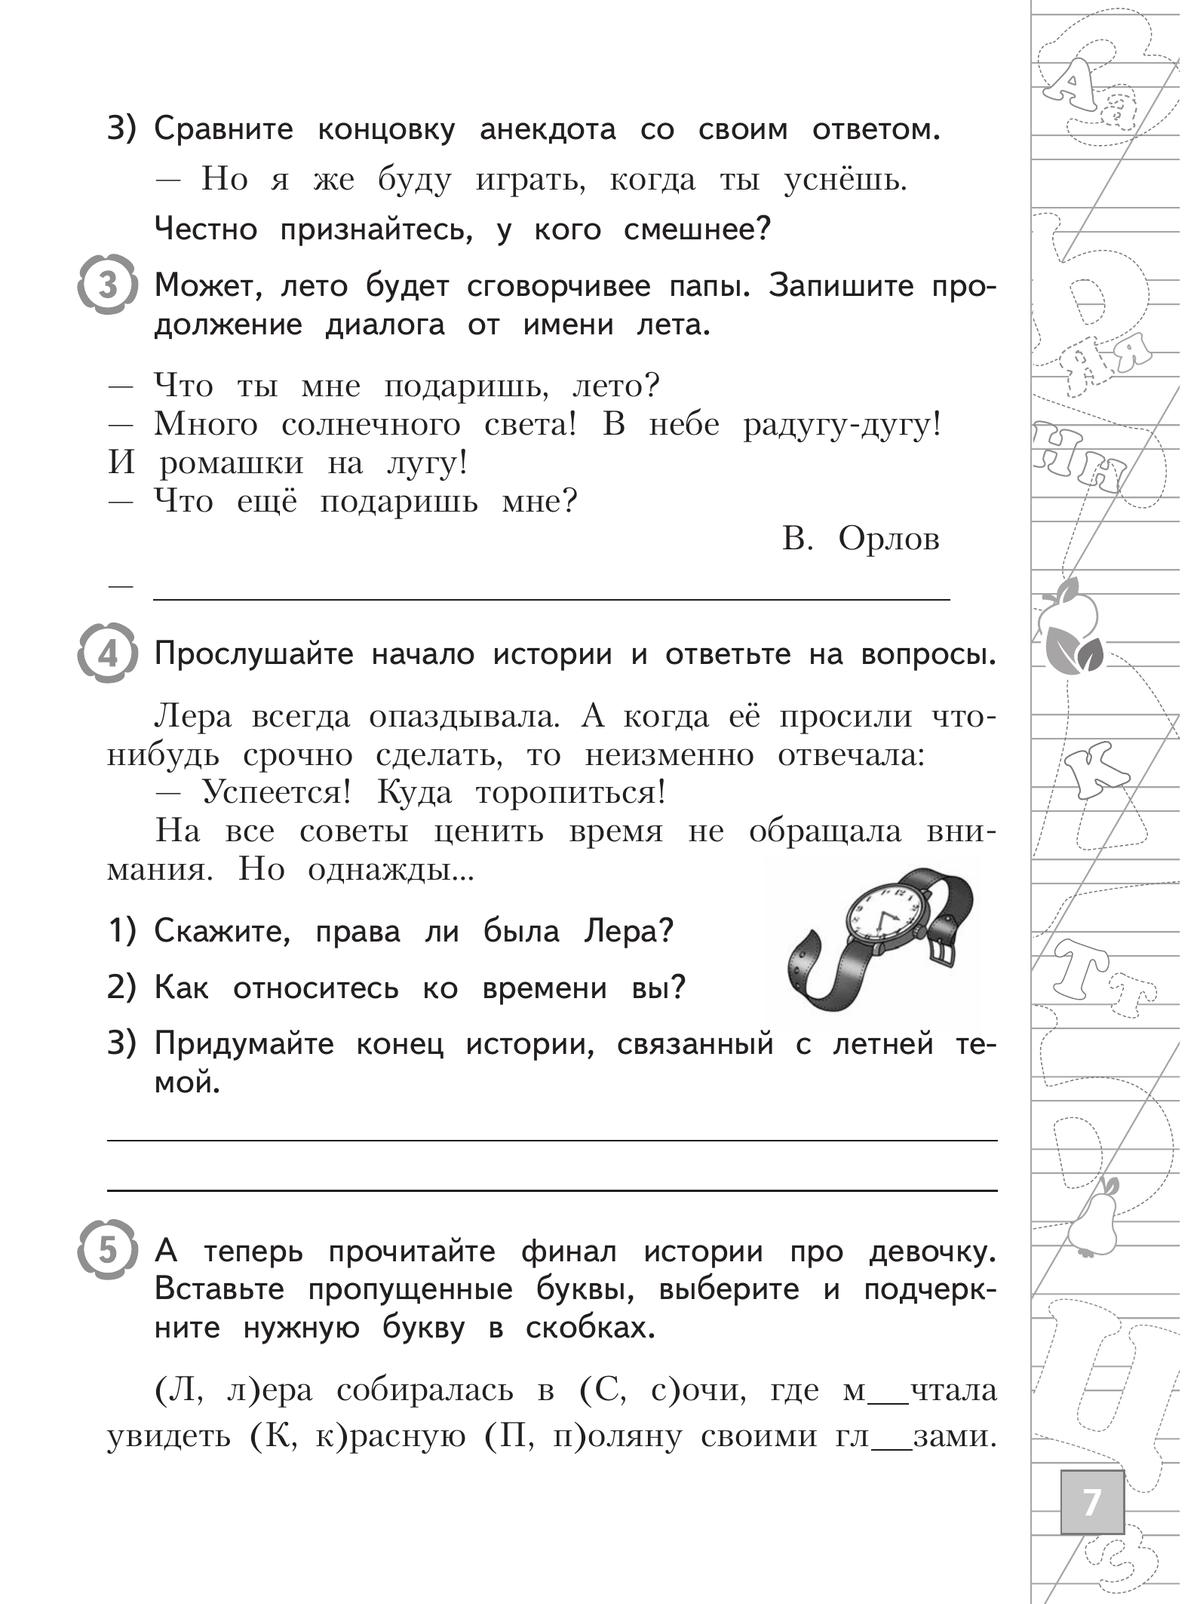 Русский язык. Тетрадь летних заданий. 2 класс 5